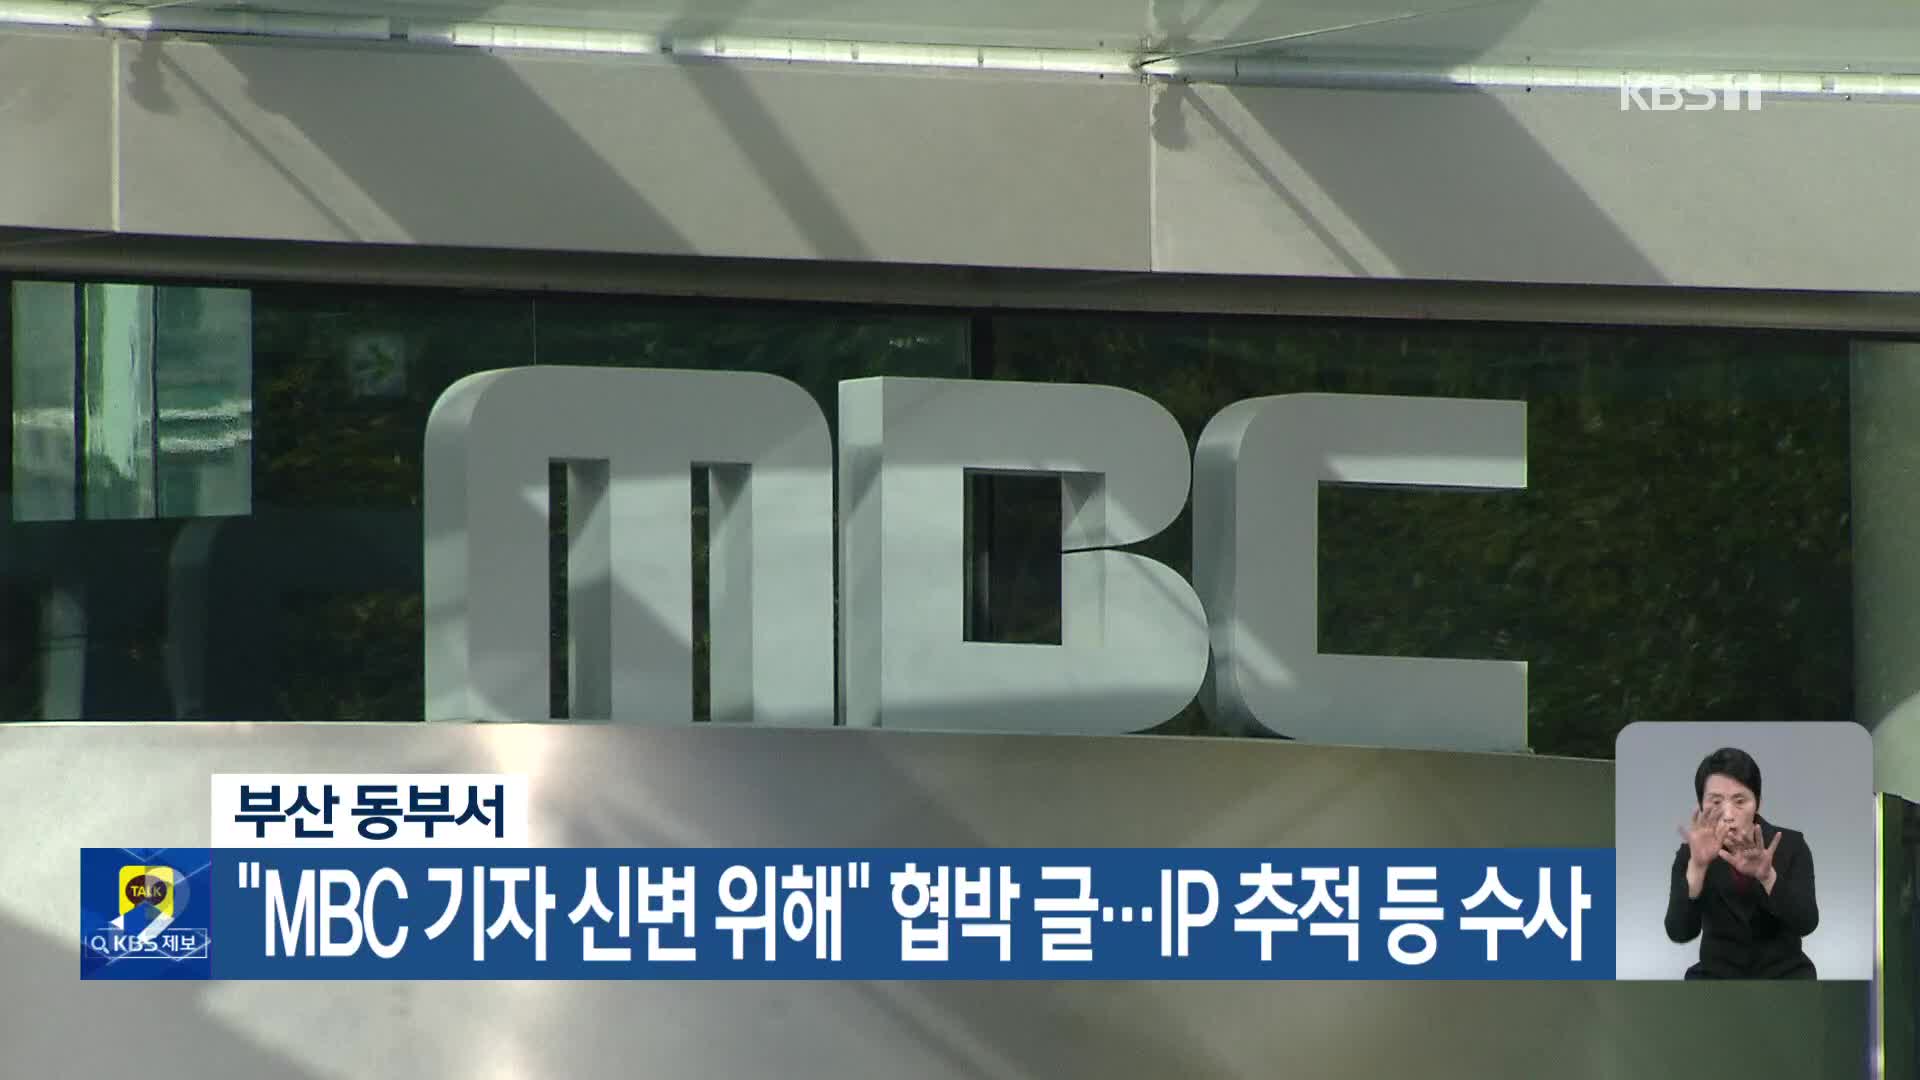 부산 동부서, “MBC 기자 신변 위해” 협박 글…IP 추적 등 수사